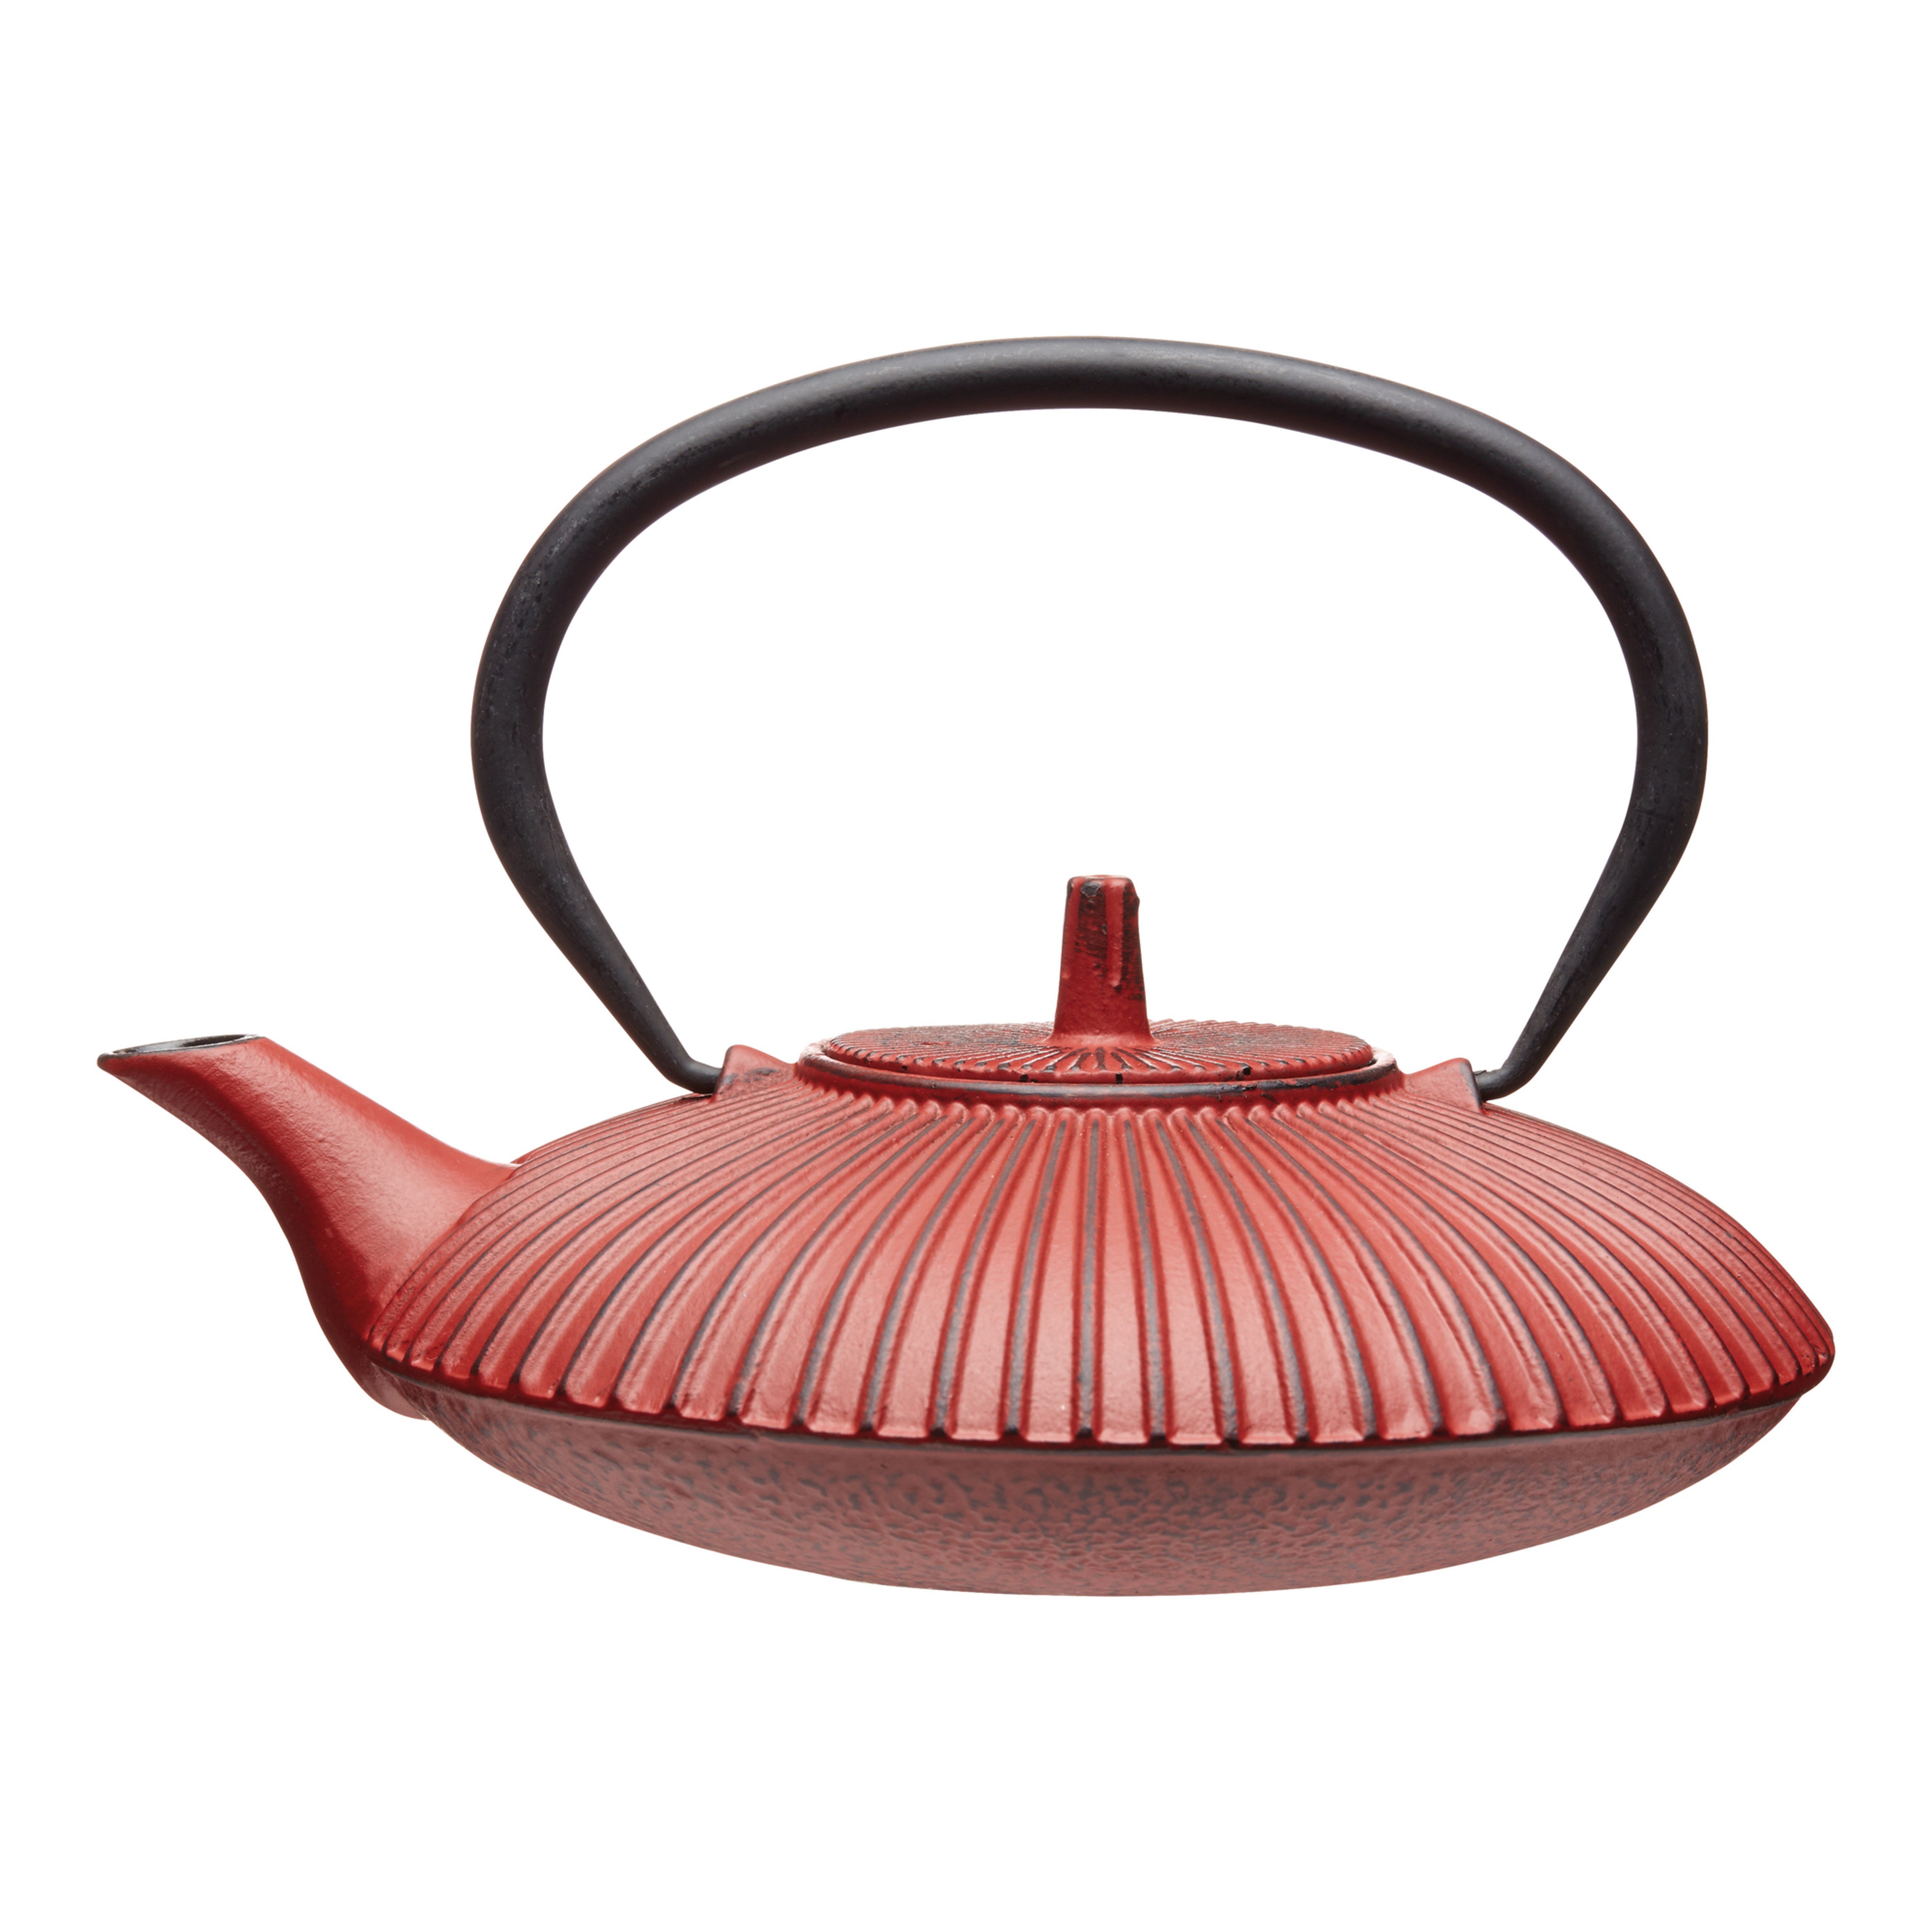 600ml Cafetiere Iron | La Teapot Red Infuser Dunelm Cast